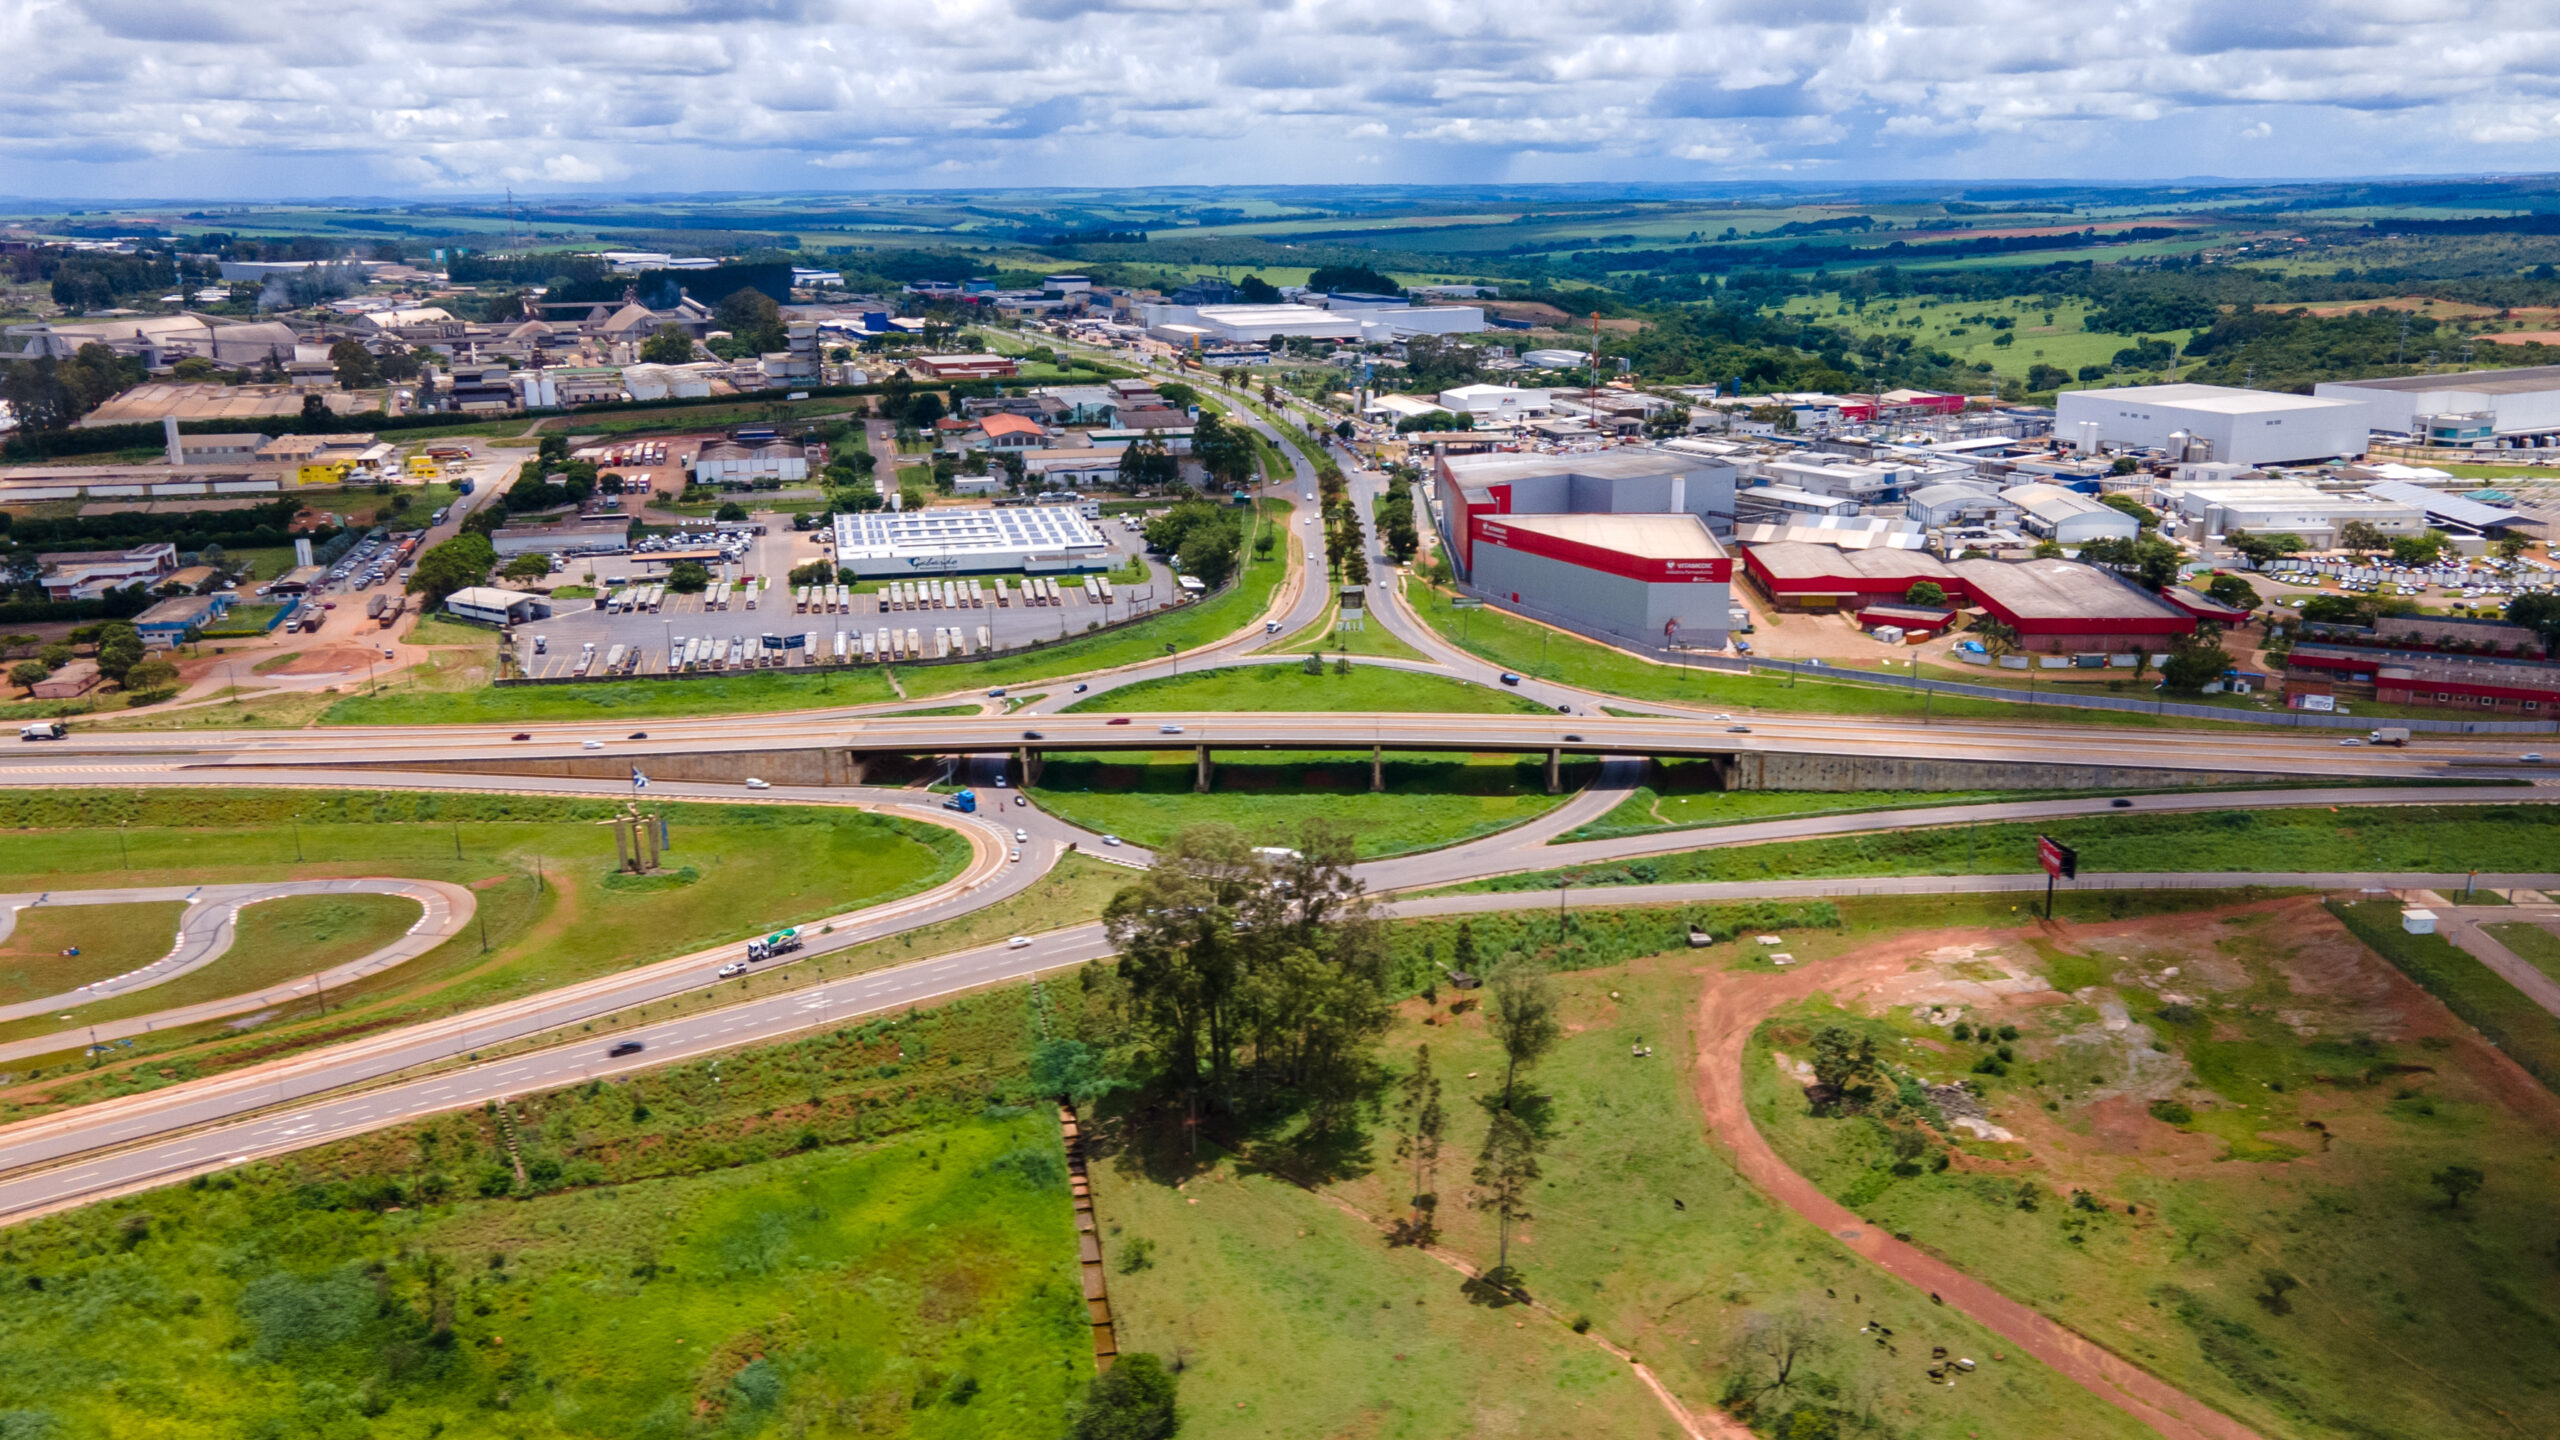 Das 31 empresas que aderiram ao Programa Desenvolve Goiás, 9 estão instaladas no Distrito Agroindustrial de Anápolis (Daia), maior parque industrial de Goiás